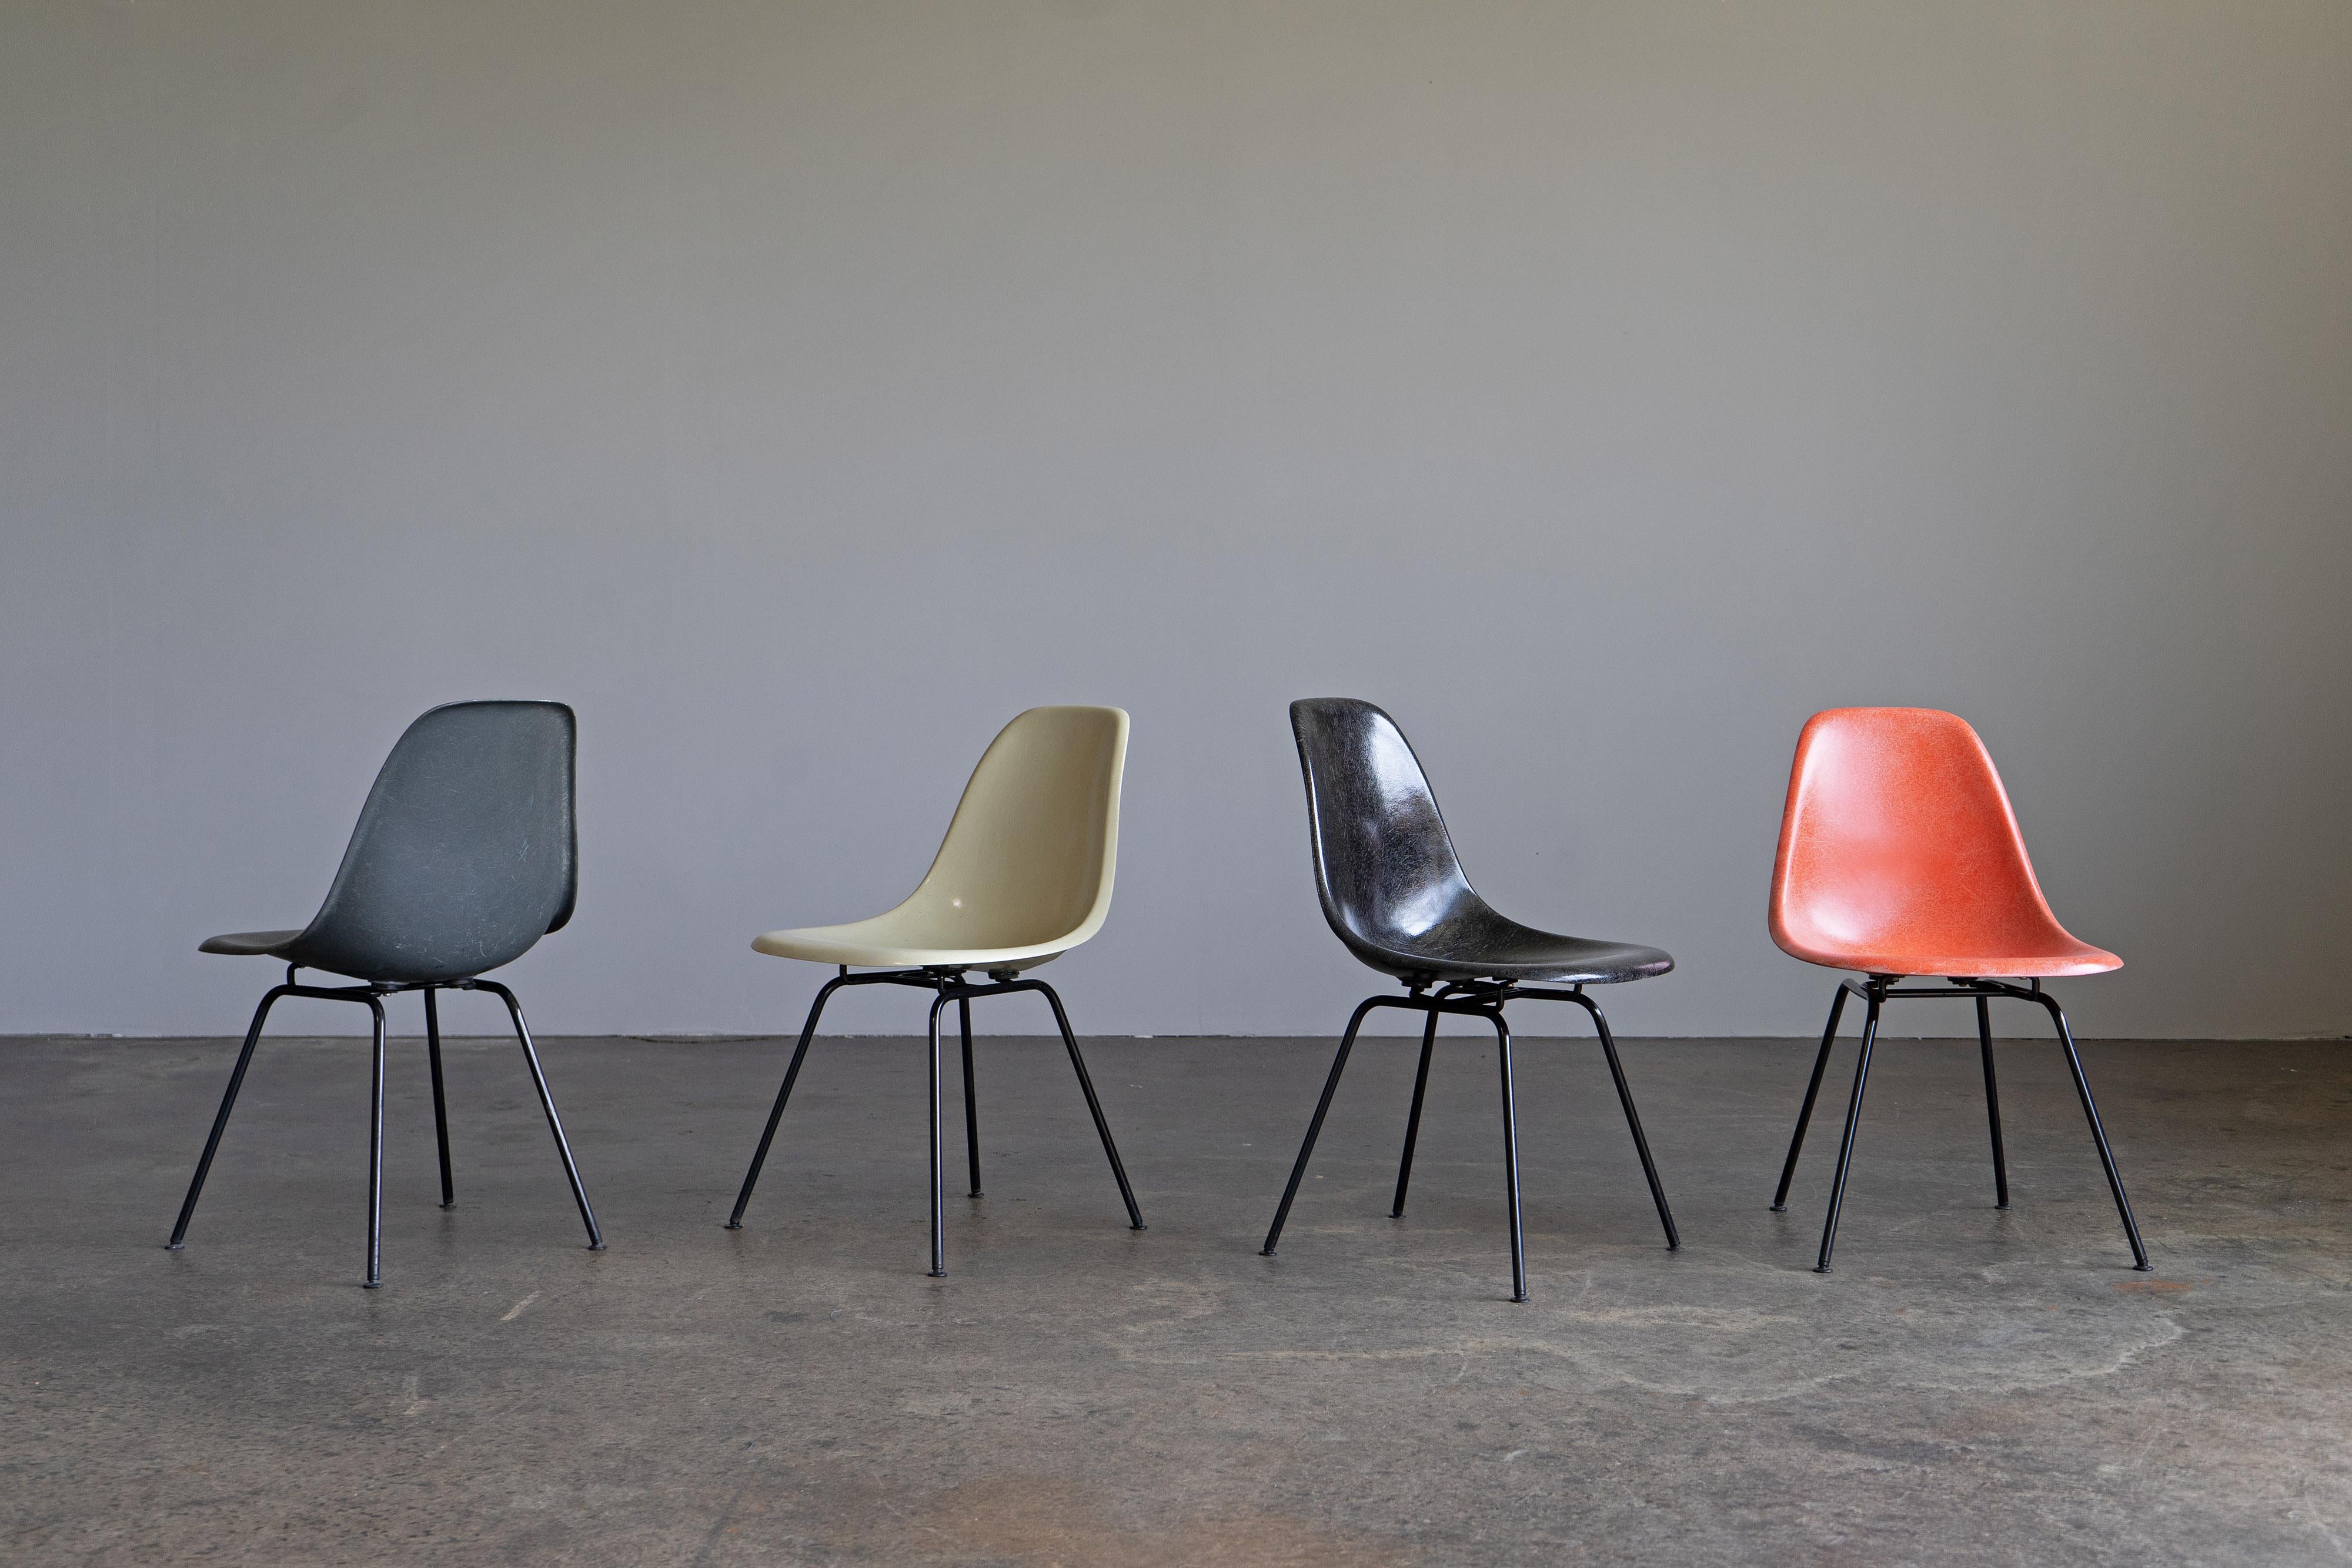 Ensemble de quatre chaises d'appoint multicolores de Charles et Ray Eames. Les chaises ont été produites par Herman Miller/Vitra dans les années 1960 et présentent une belle structure en fibre de verre. Les obus sont montés sur des bases en H.